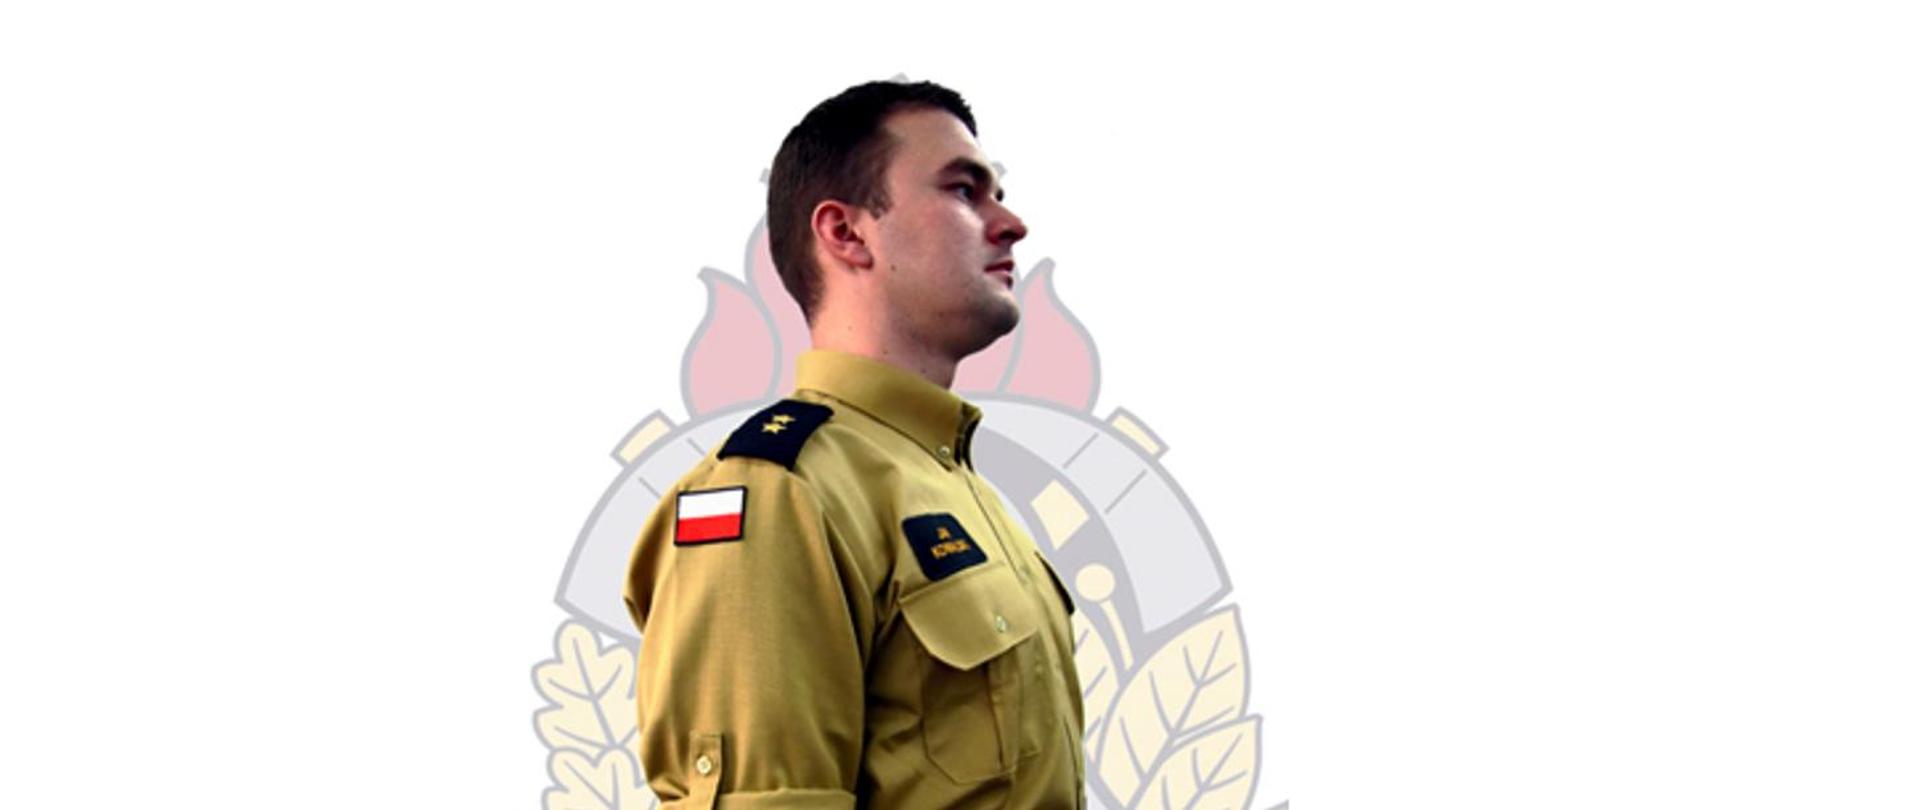 Nowe umundurowanie w Państwowej Straży Pożarnej - strażak prezentujący prawy profil ubrany w koszulę i spodnie służbowe. W tle znak wodny logo Państwowej Straży Pożarnej,